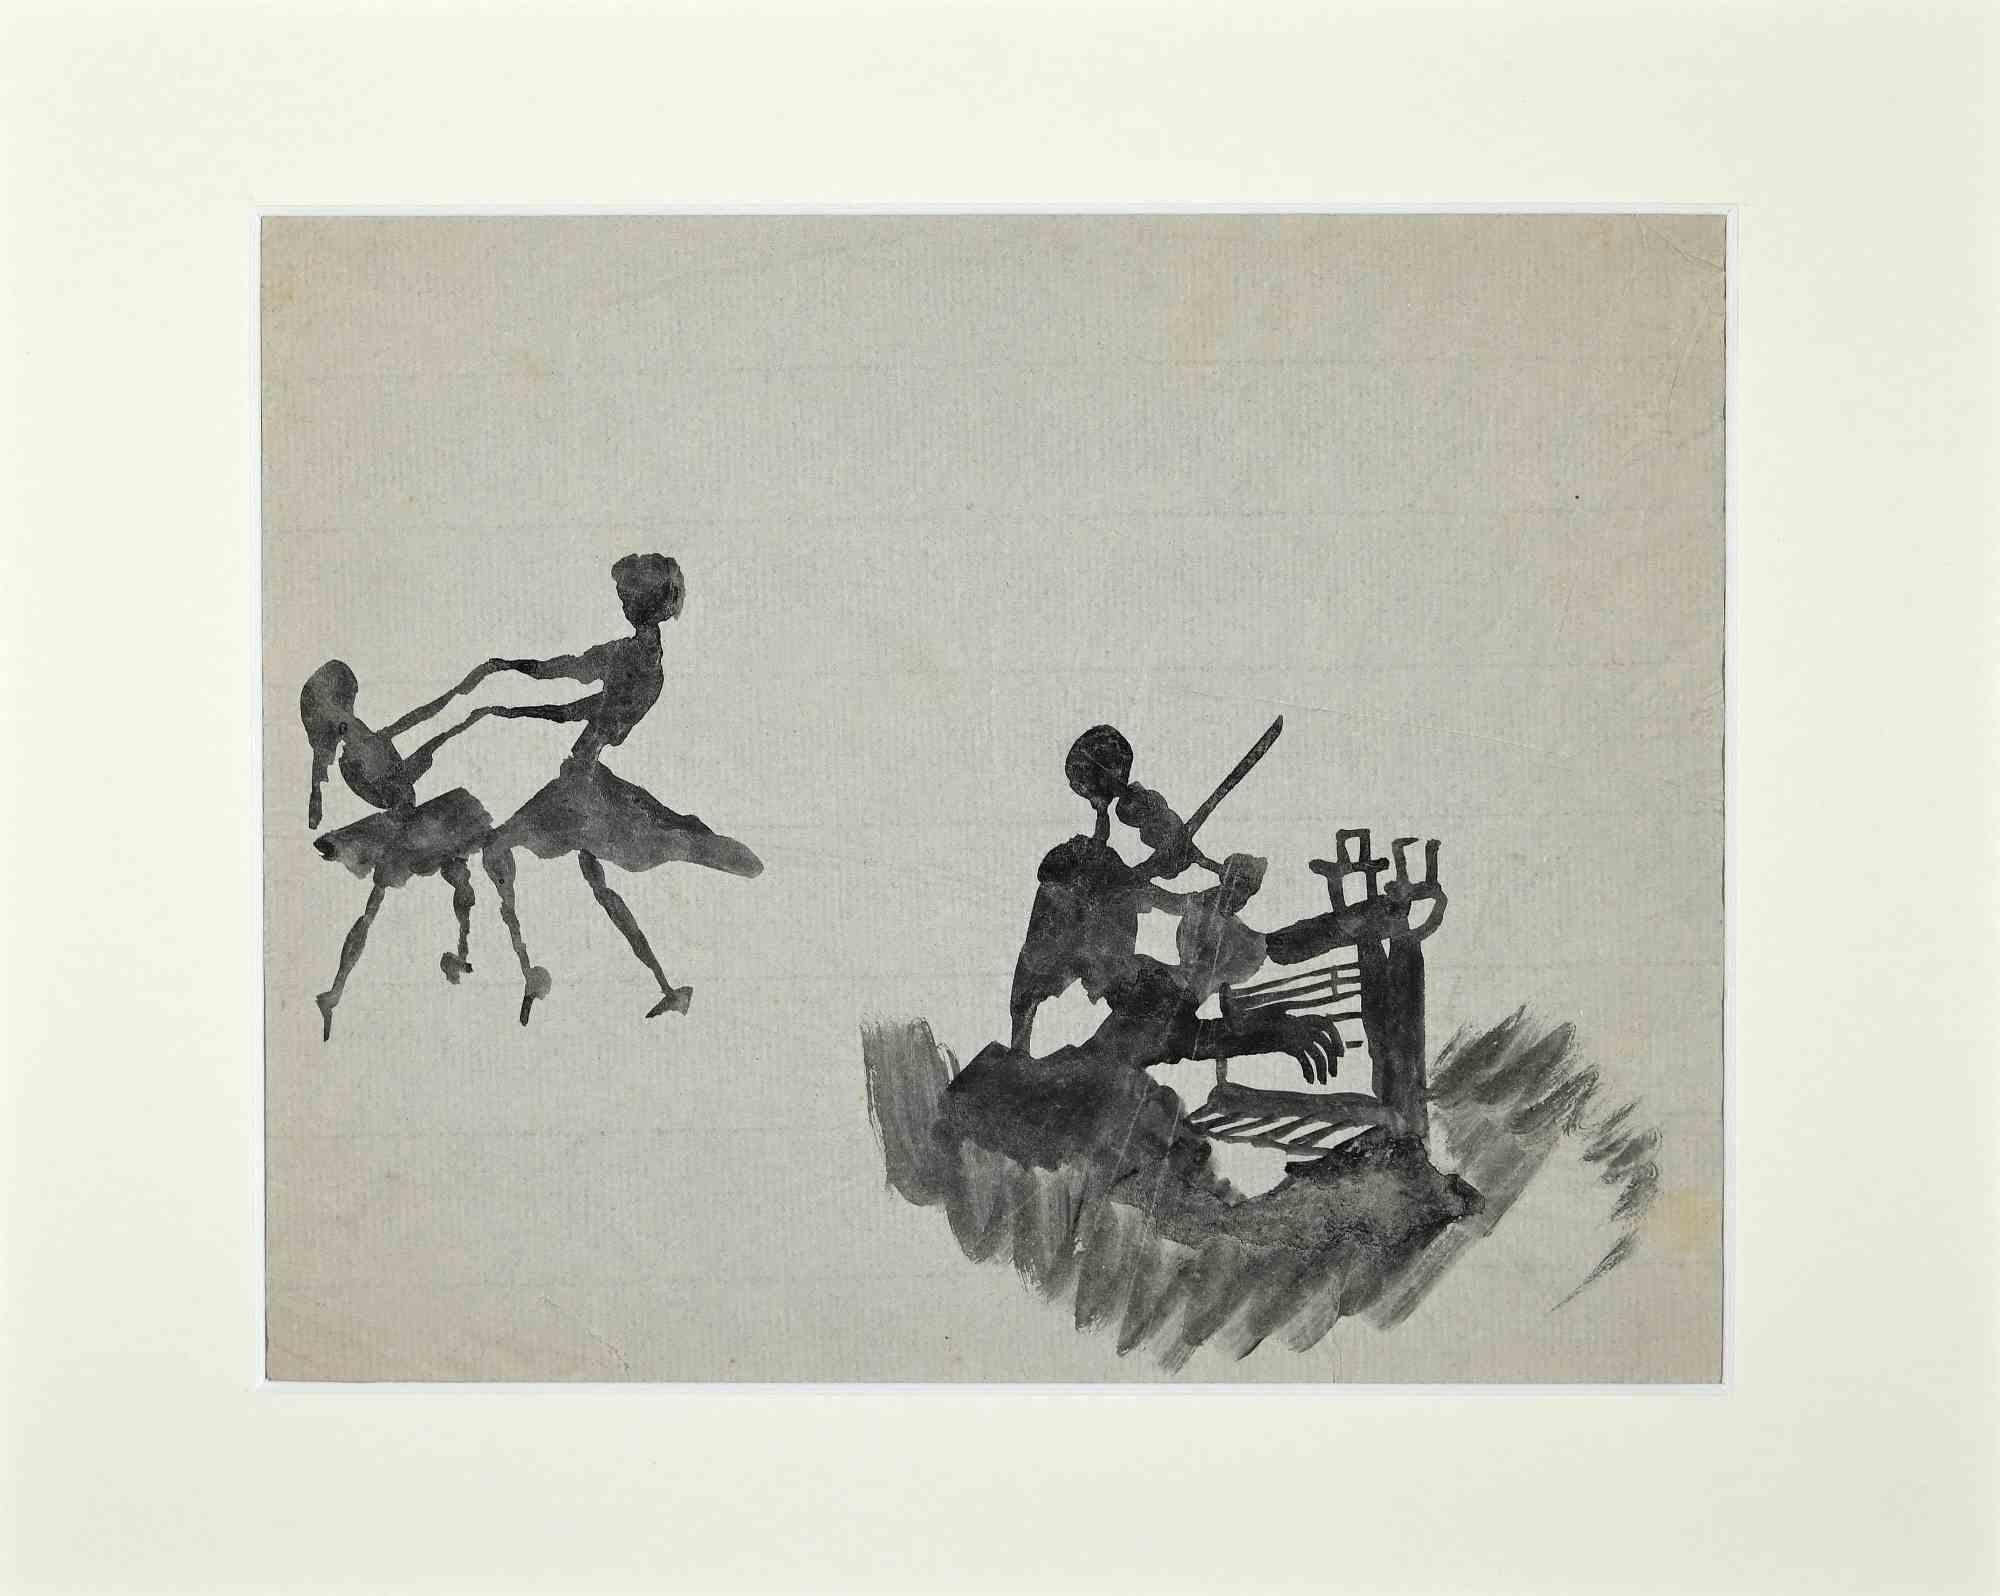 The Dance - Originalzeichnung von Mino Maccari - Mitte des 20. Jahrhunderts